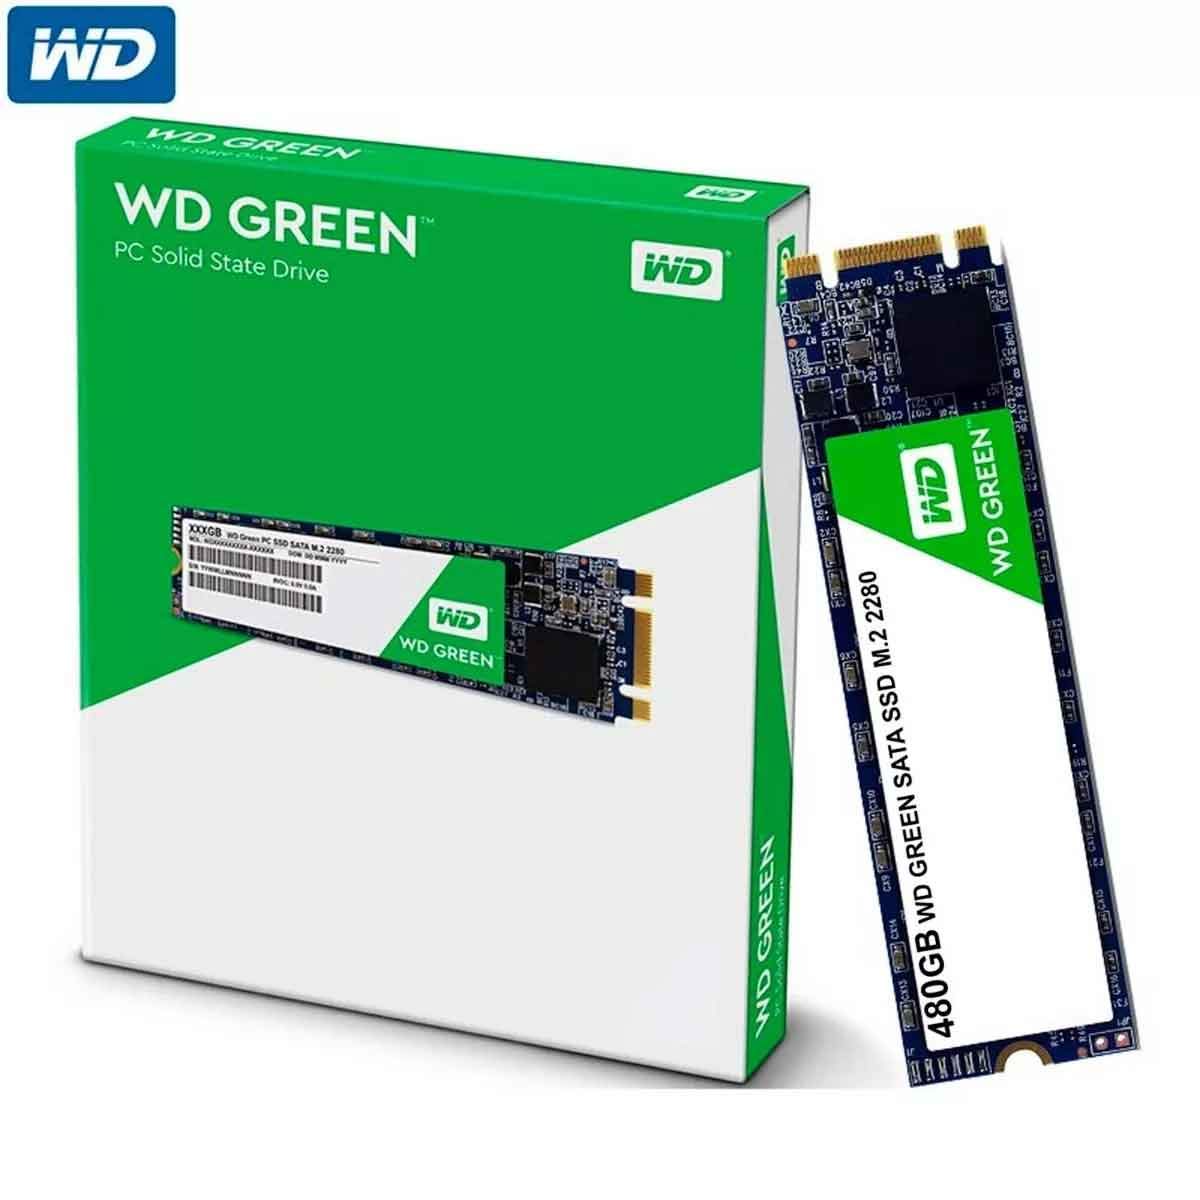 WD GREEN 480GB SSD M.2/7MM In Jordan